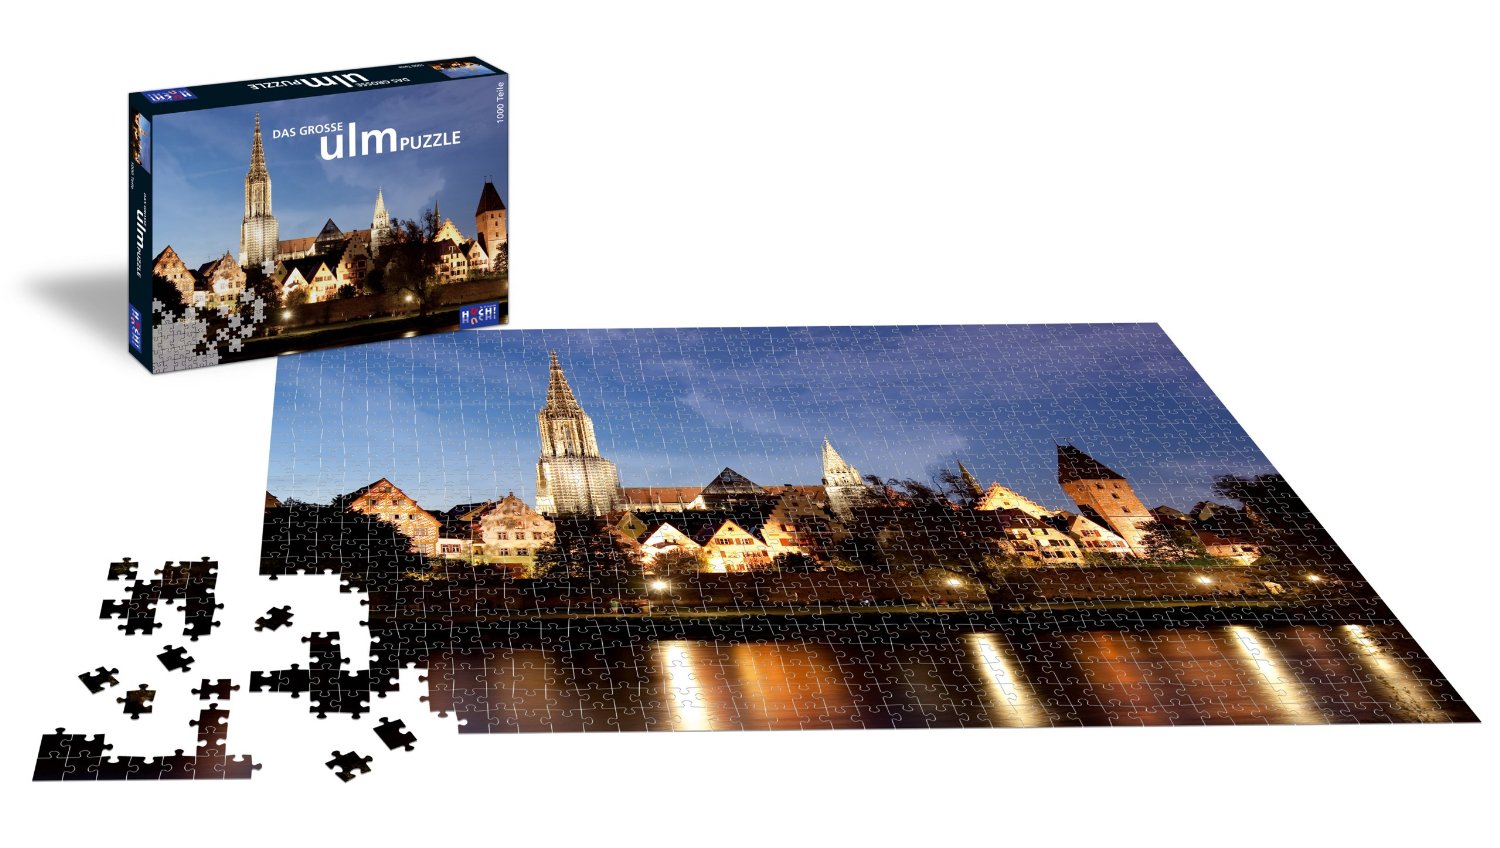 Ulmer puzzleschmiede 1000 Teile Puzzle Tree of life in Bayern - Nersingen, Weitere Spielzeug günstig kaufen, gebraucht oder neu